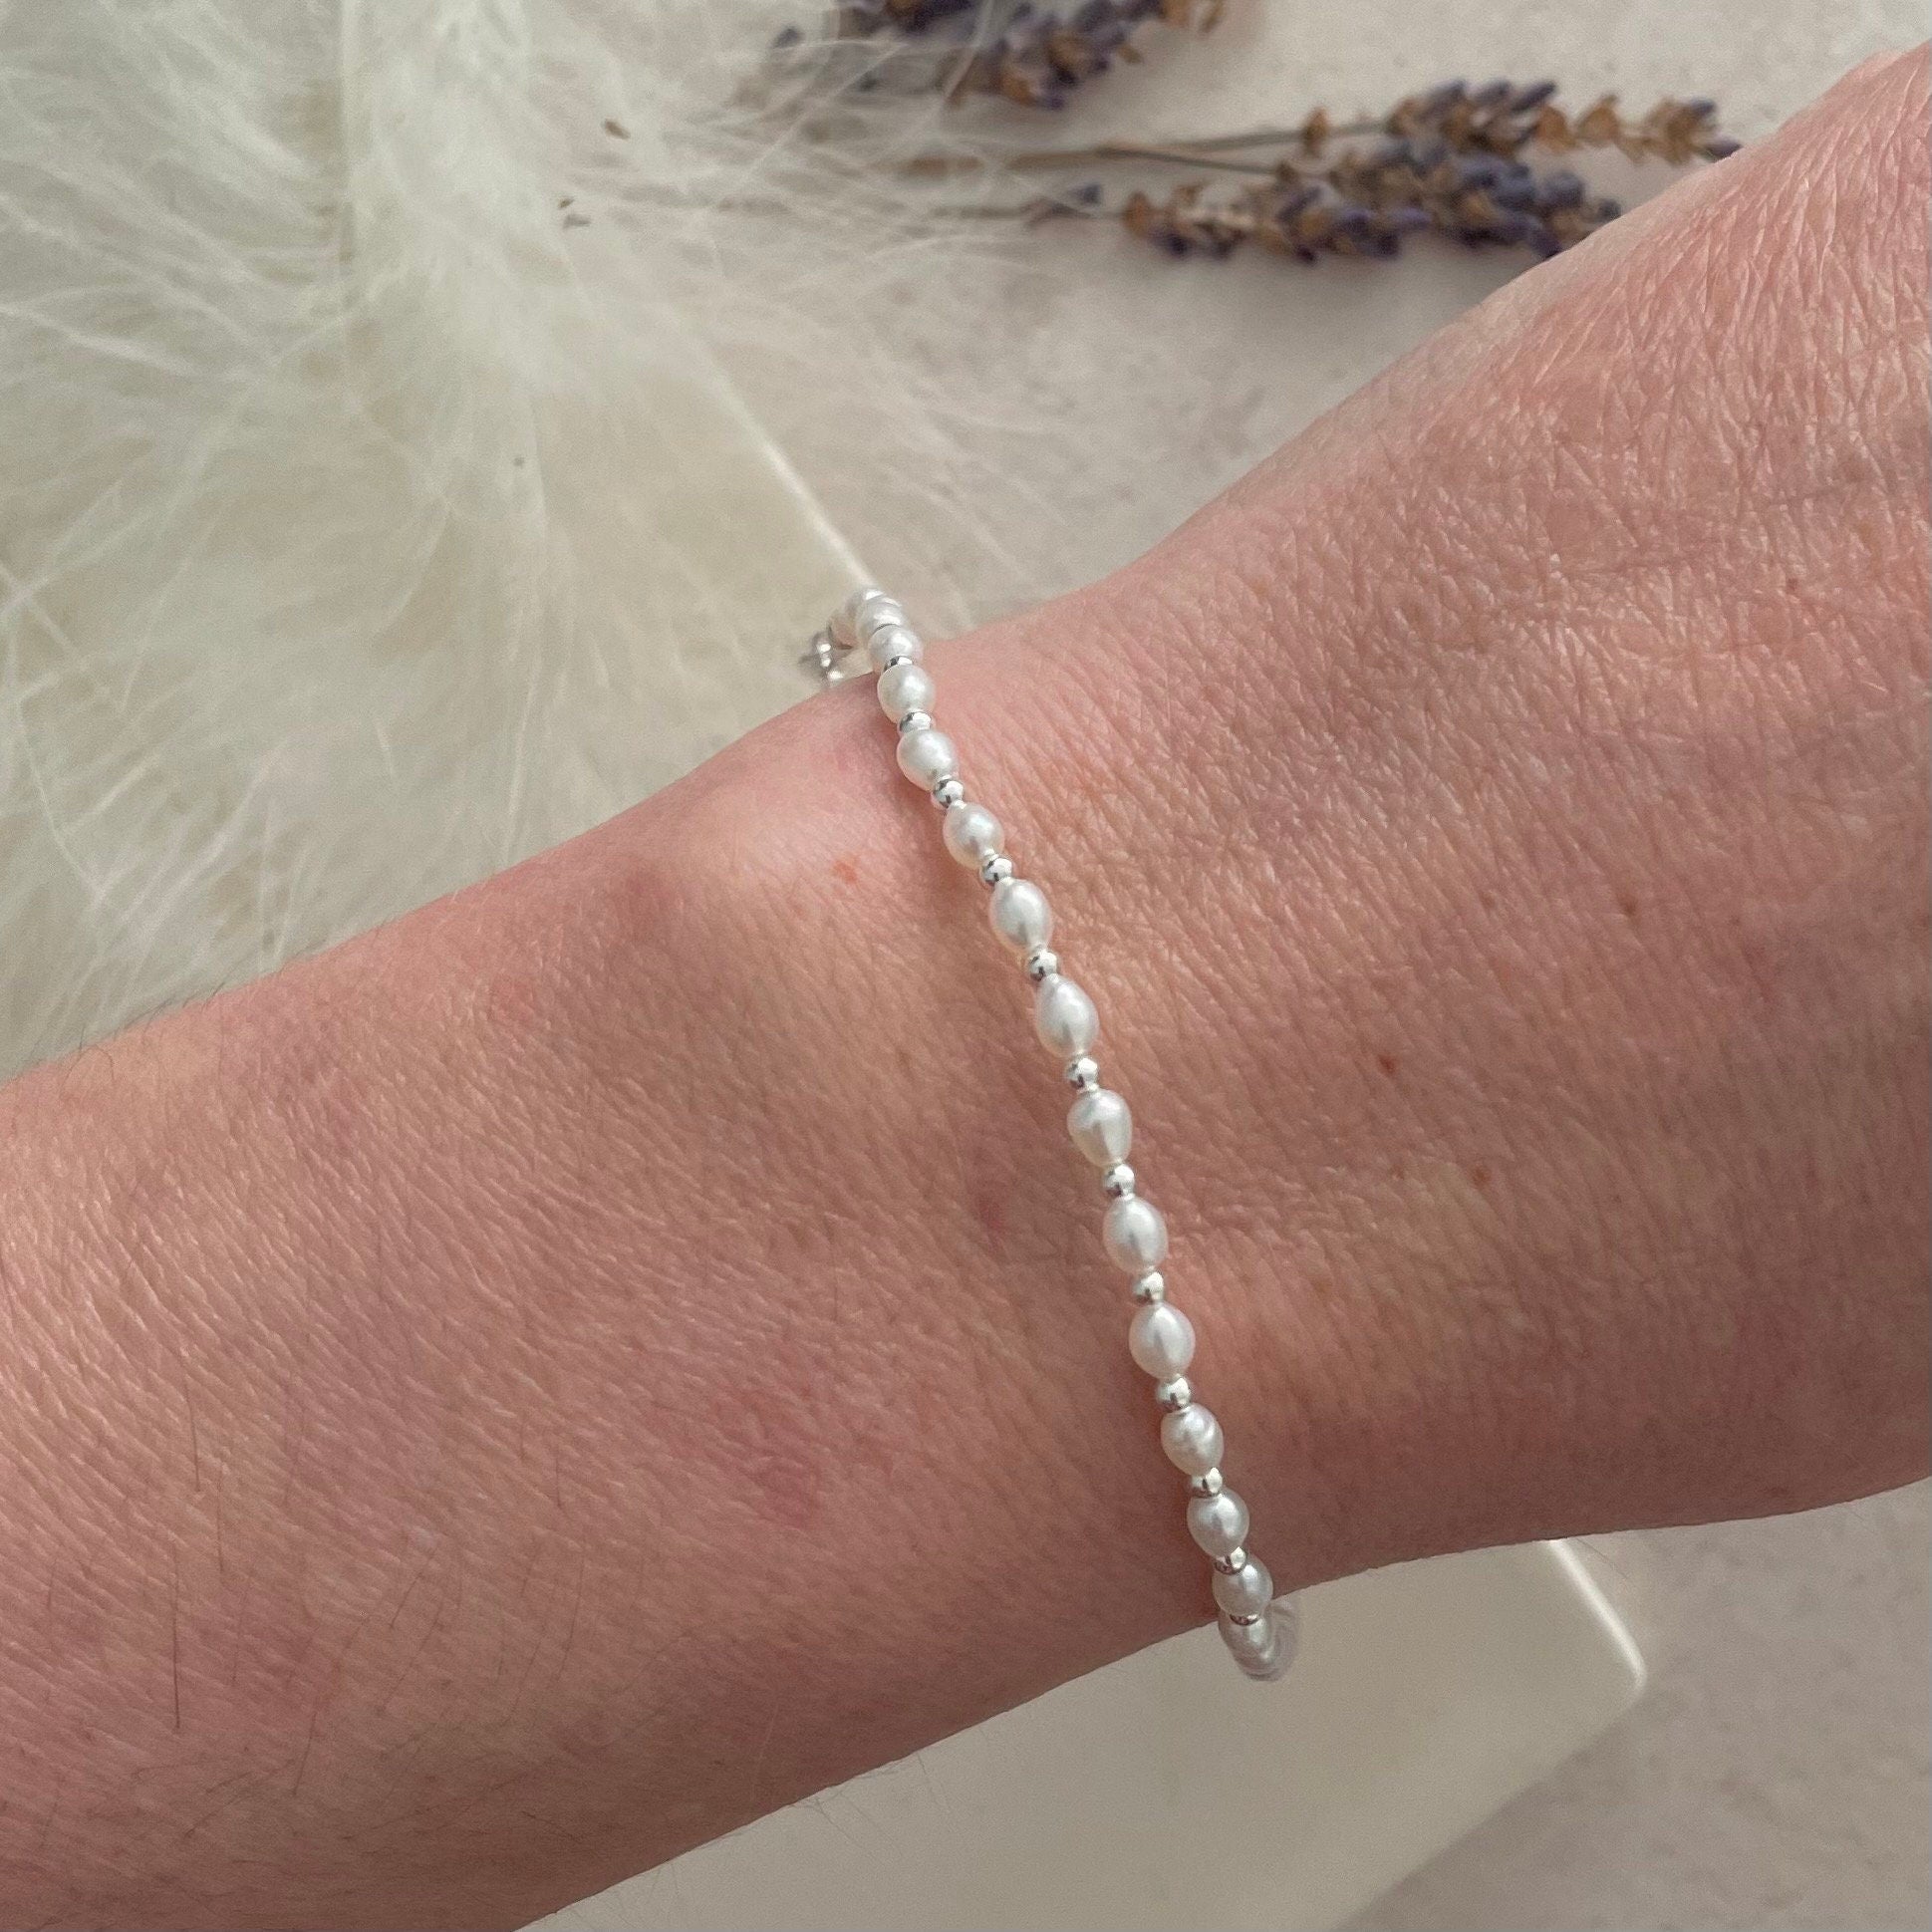 Dainty Pearl Bracelet in Sterling Silver, June Birthstone